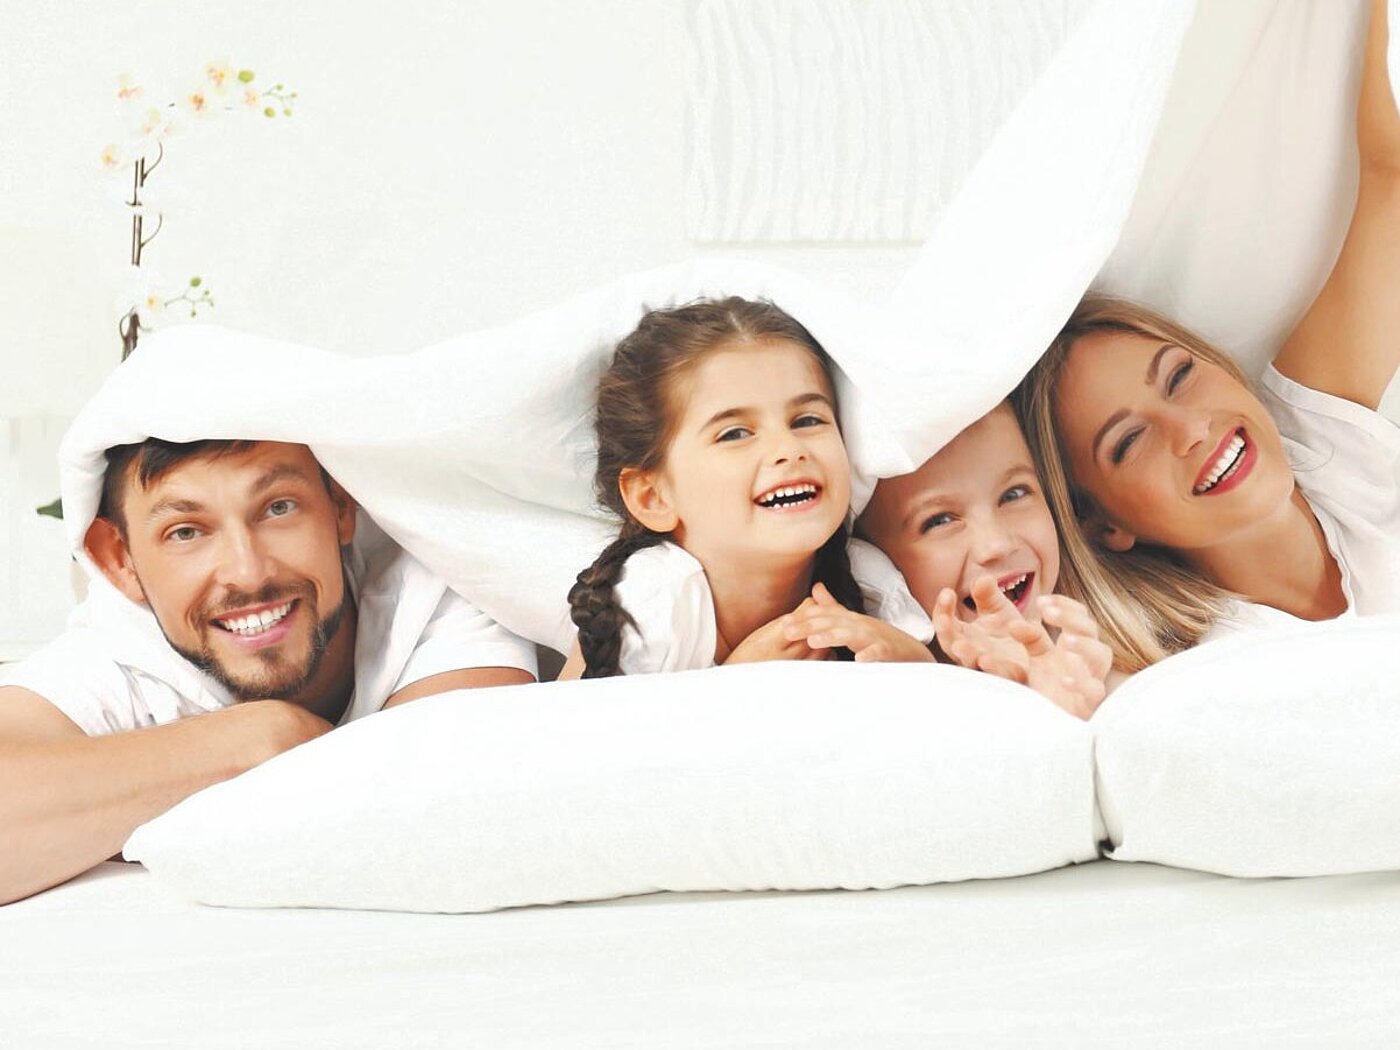 Eine Familie aus Vater, Mutter und zwei Kindern liegt komfortabel und fröhlich auf weißen Kissen unter einer weißen Bettdecke. Das Bild strahlt Gemütlichkeit und Gelassenheit aus.